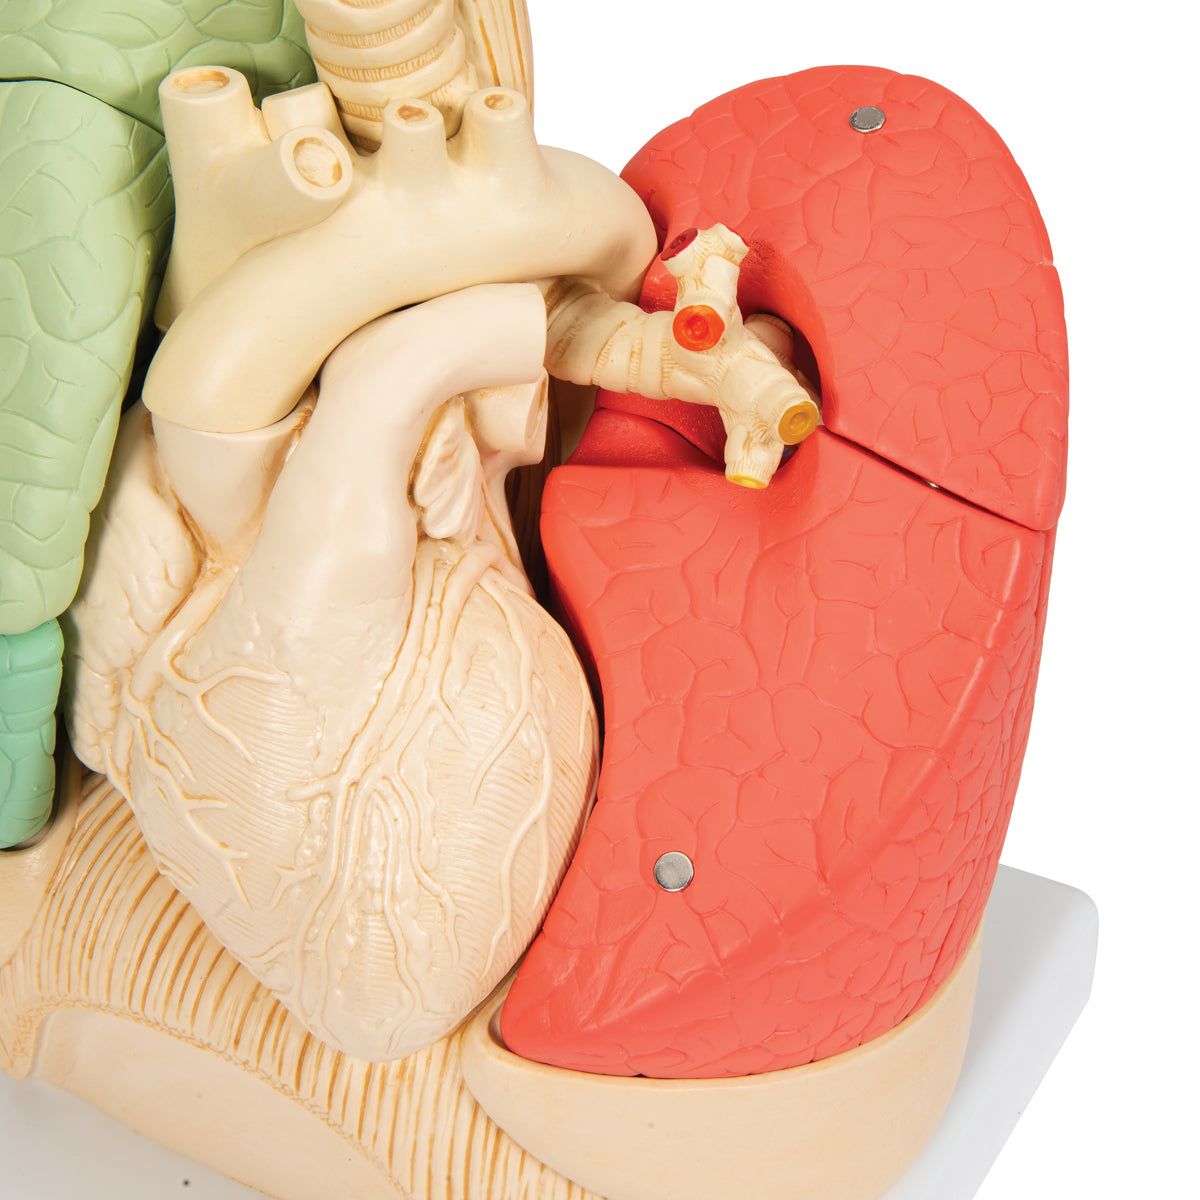 Lungmodell med hjärta och bronkier, uppdelad i segment